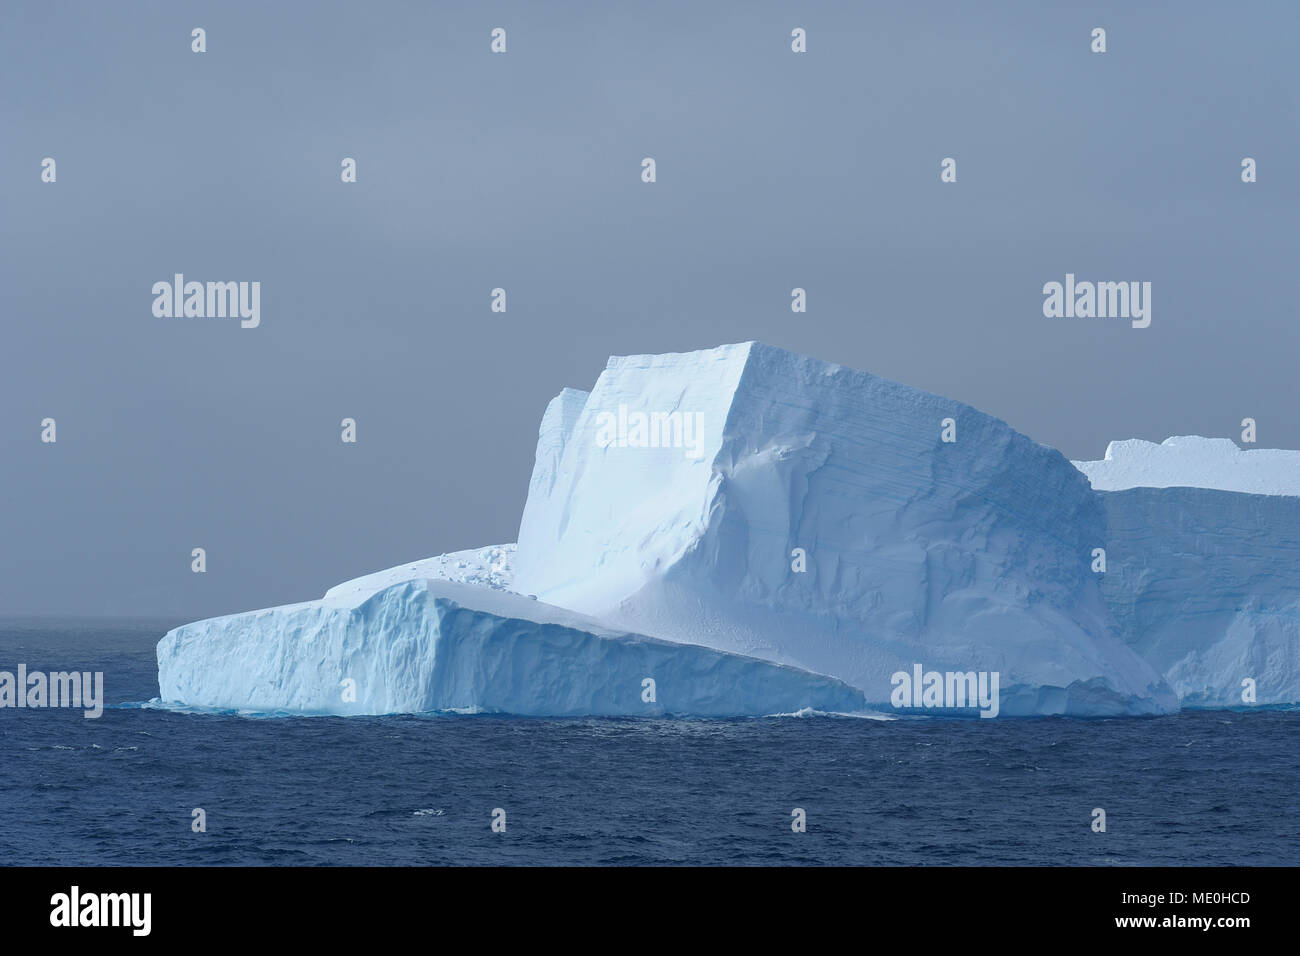 Partie d'un iceberg qui reflète la lumière sur l'image dans le son à l'Antarctique la péninsule Antarctique, l'Antarctique Banque D'Images